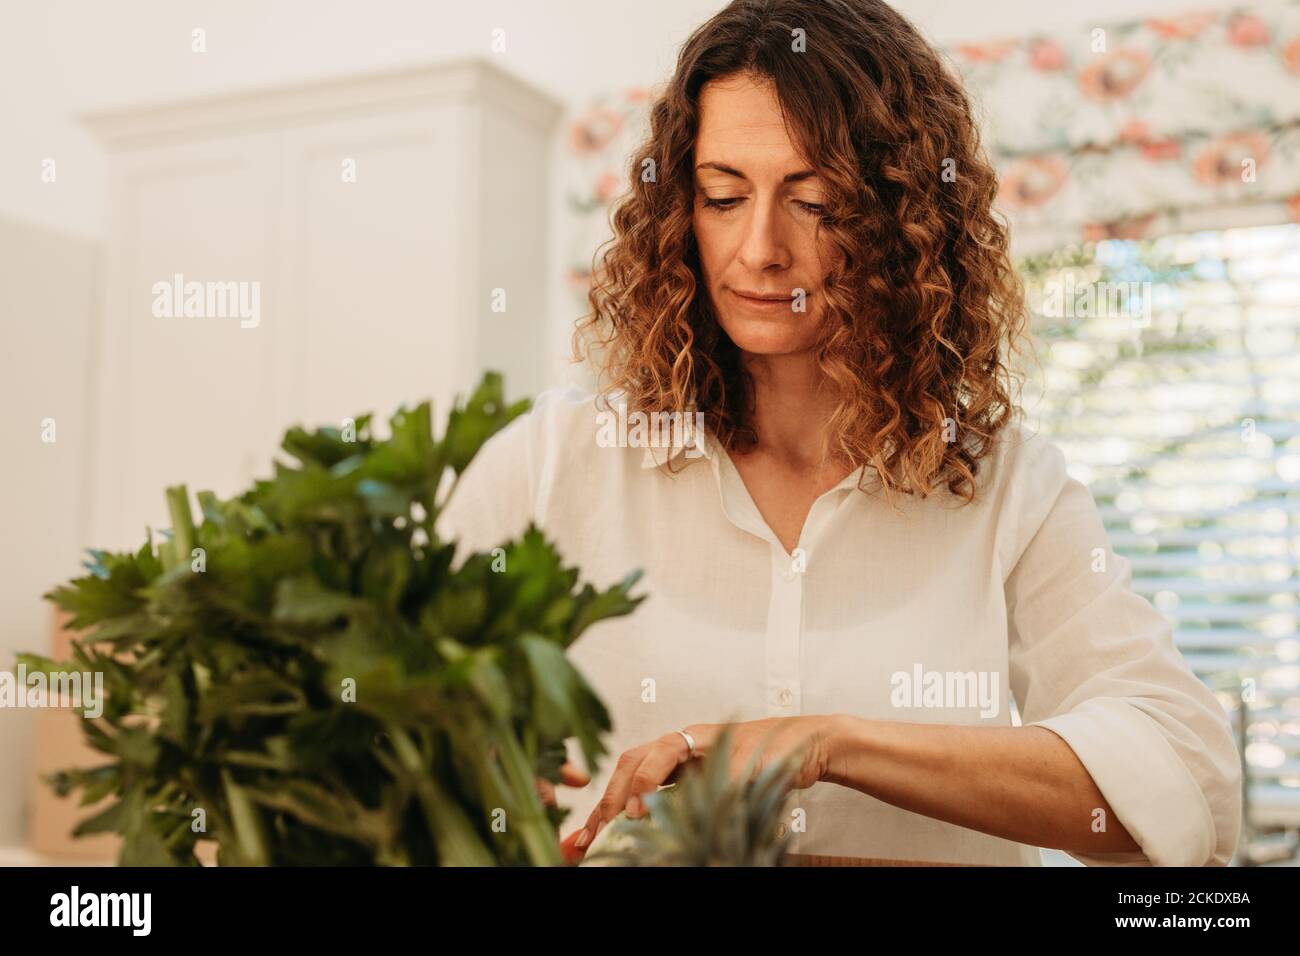 Frau, die das Lebensmittelgeschäft überprüft, das gerade nach Hause geliefert wurde. Weibliche Überprüfung ihrer frischen Gemüse Lieferung in der Küche. Stockfoto